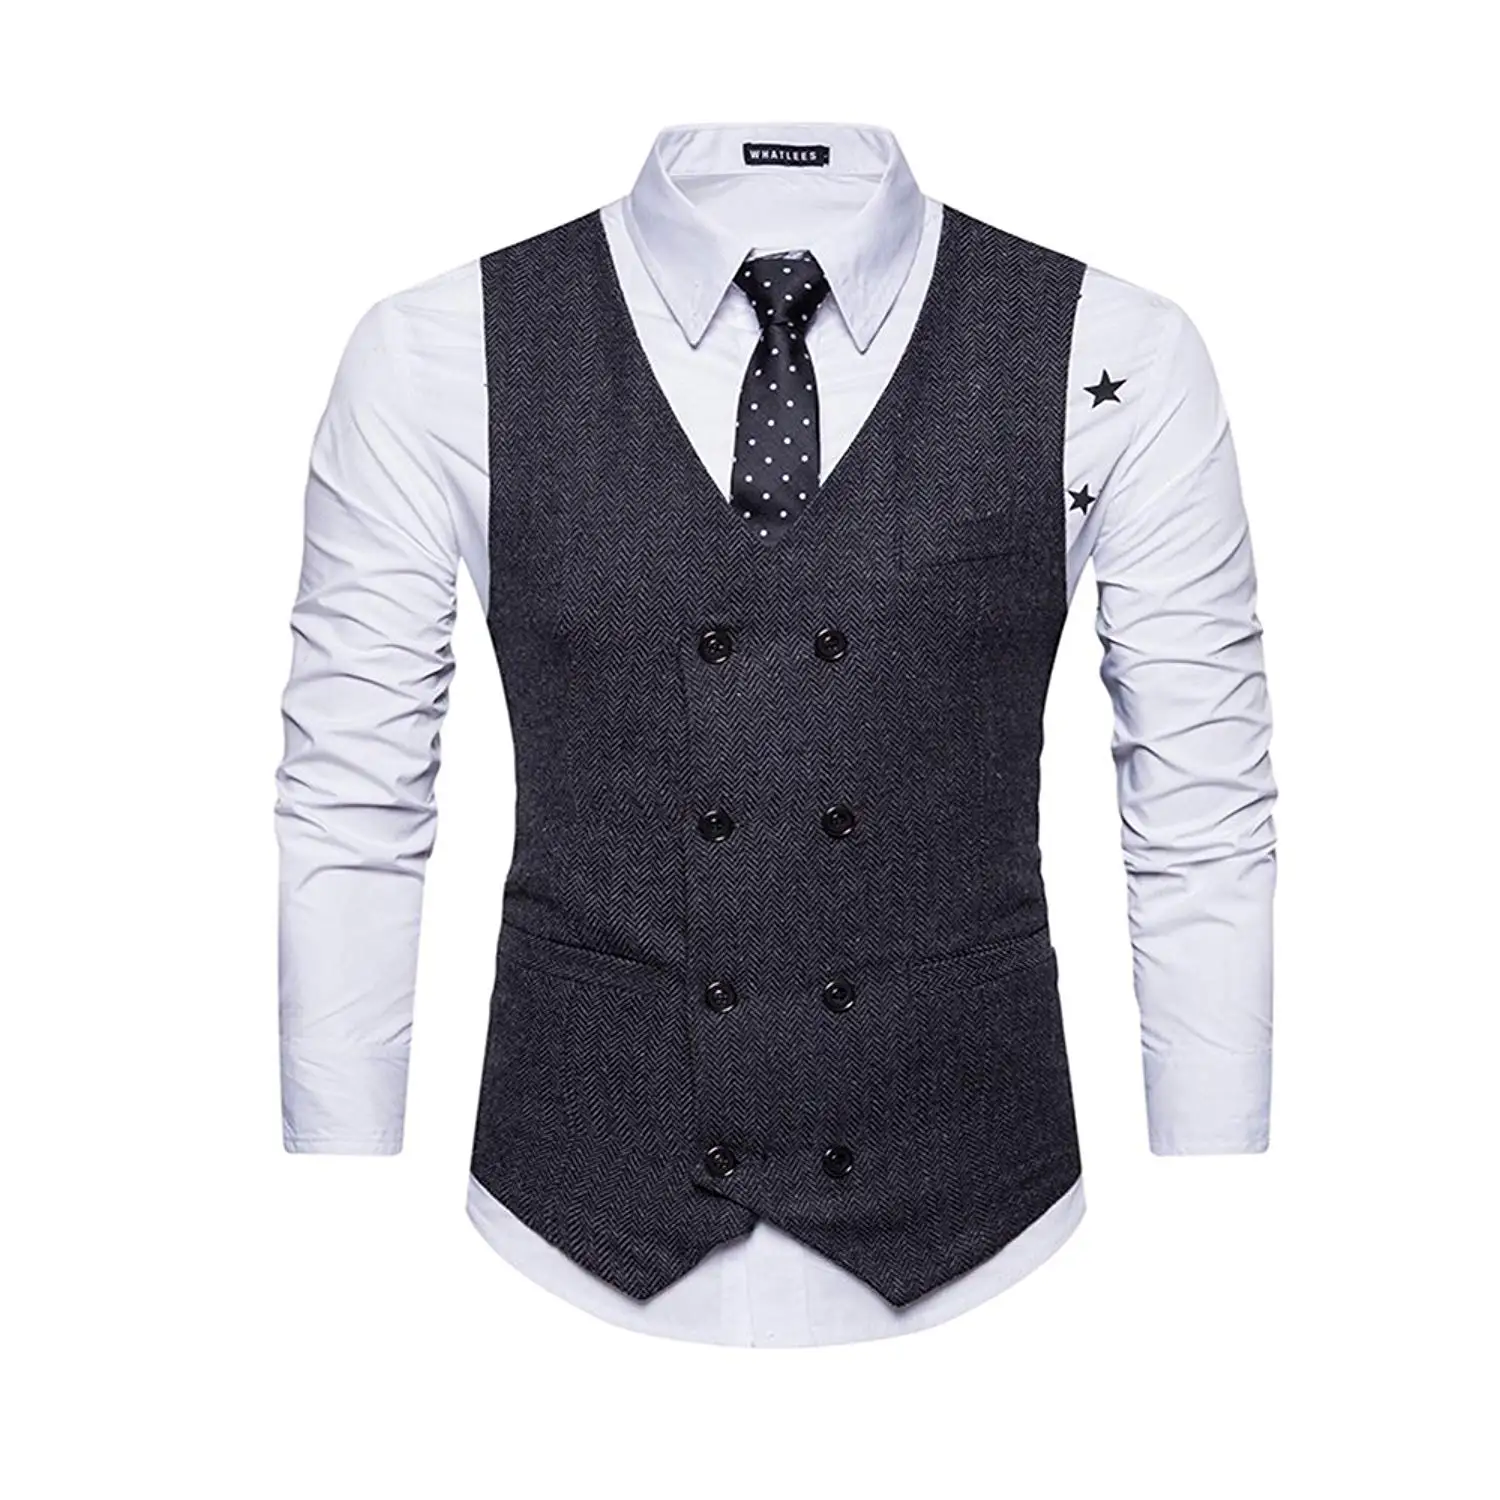 pinstripe suit vest